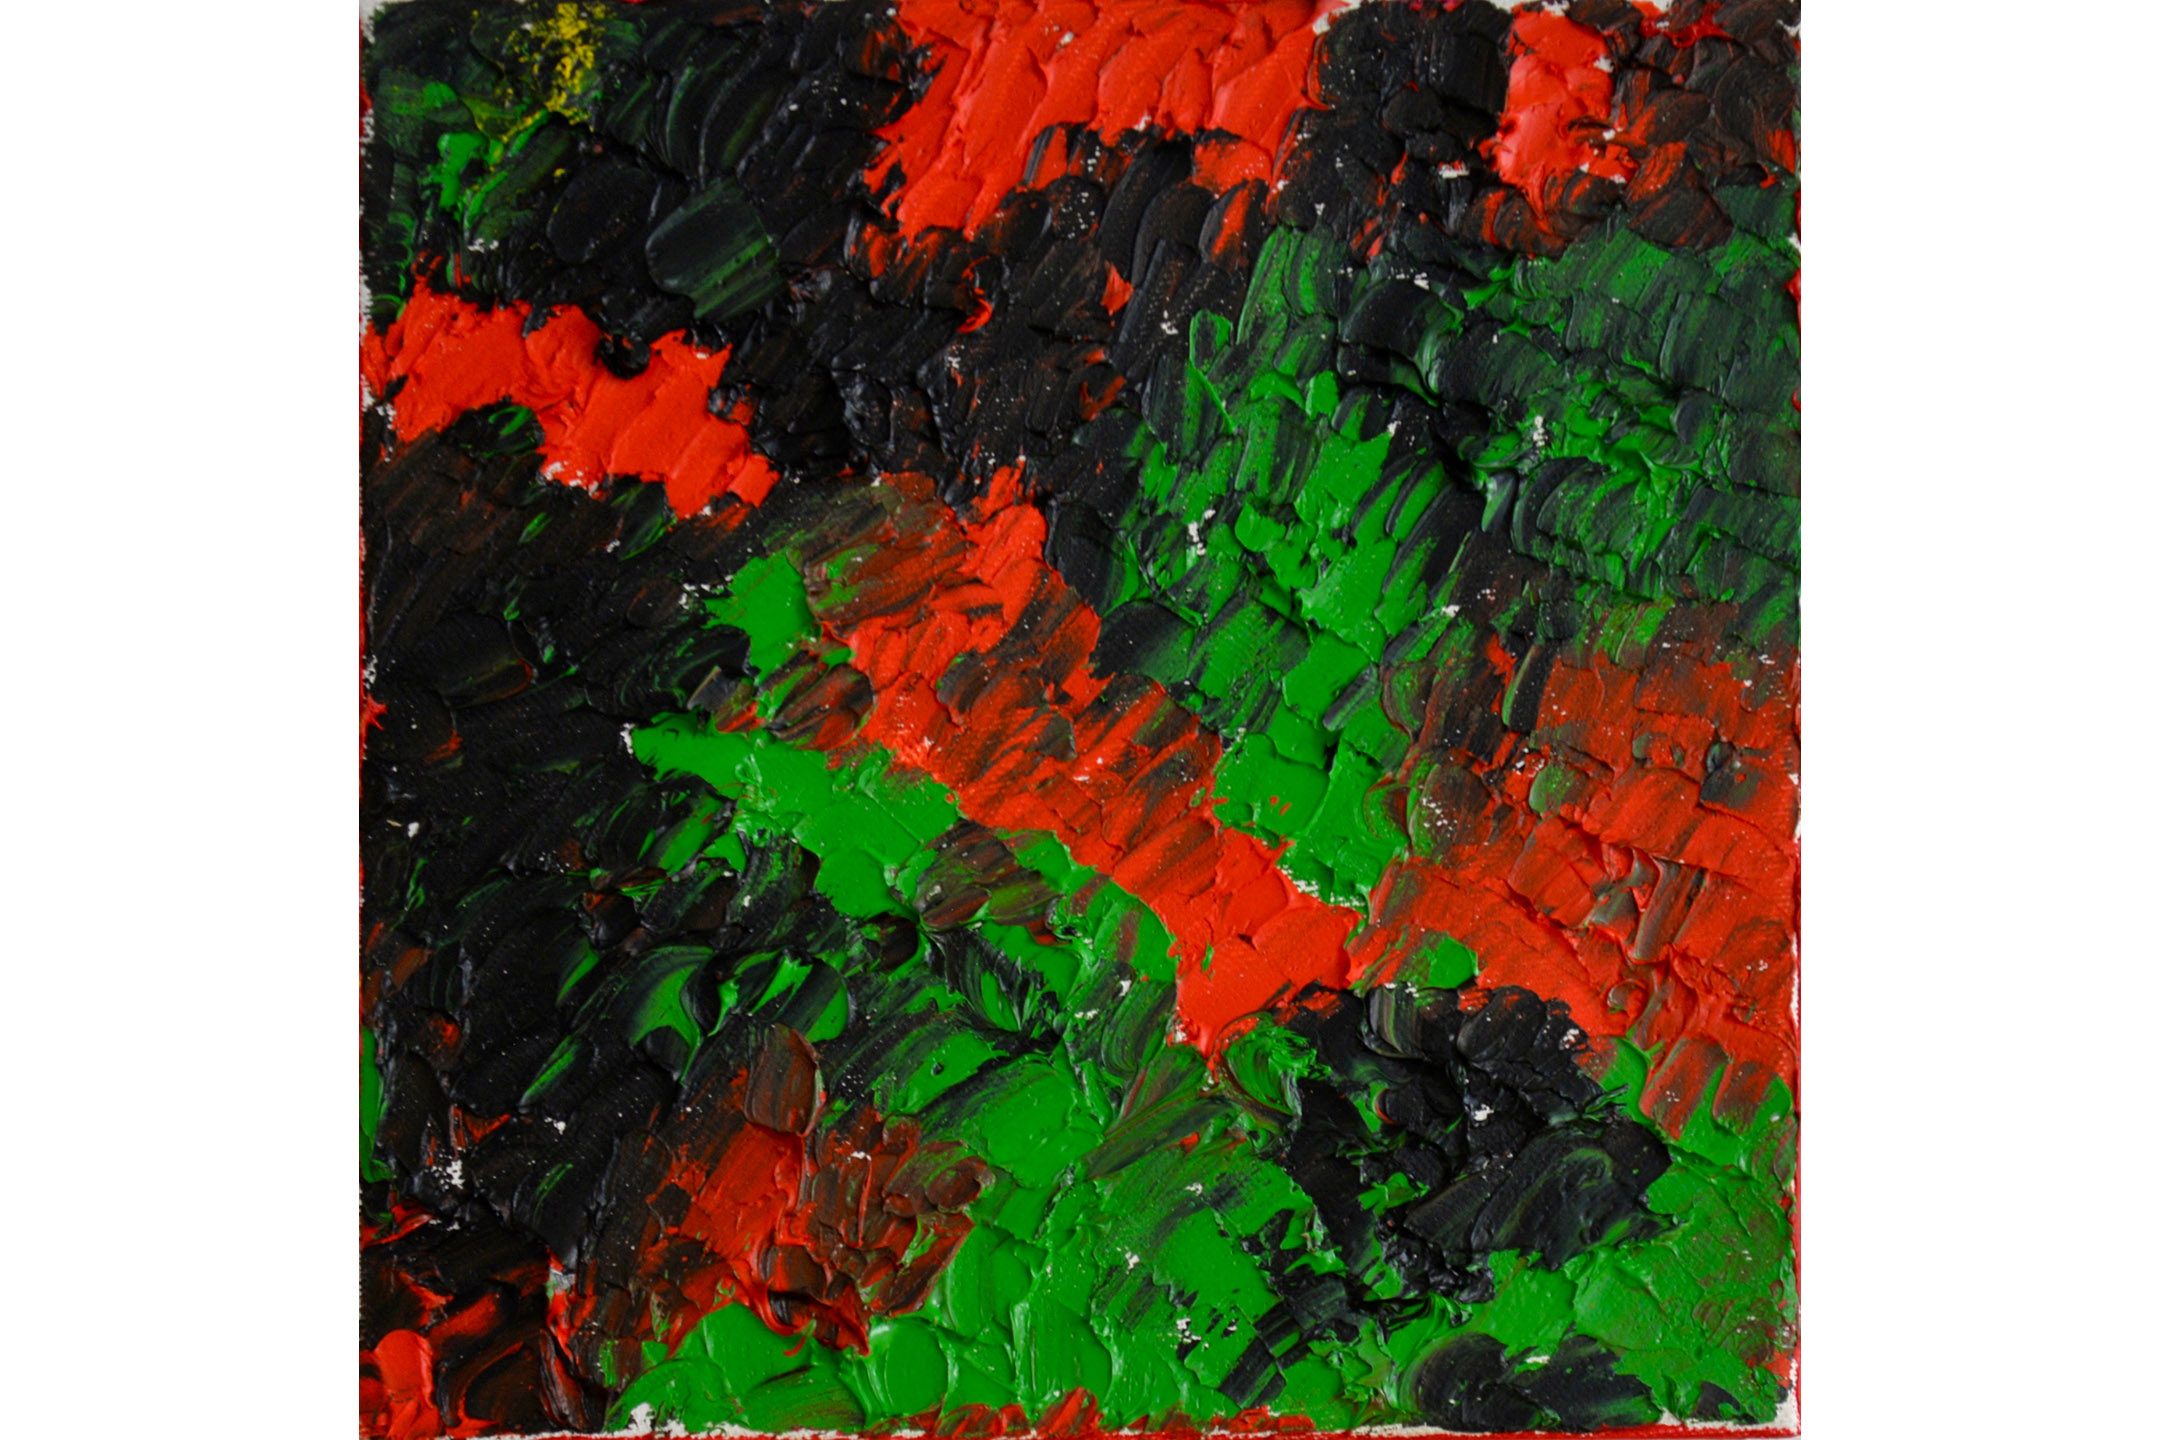 Vera Sapozhnikova, Colors Play 4, Oil on canvas, 8” x 8”, 2016